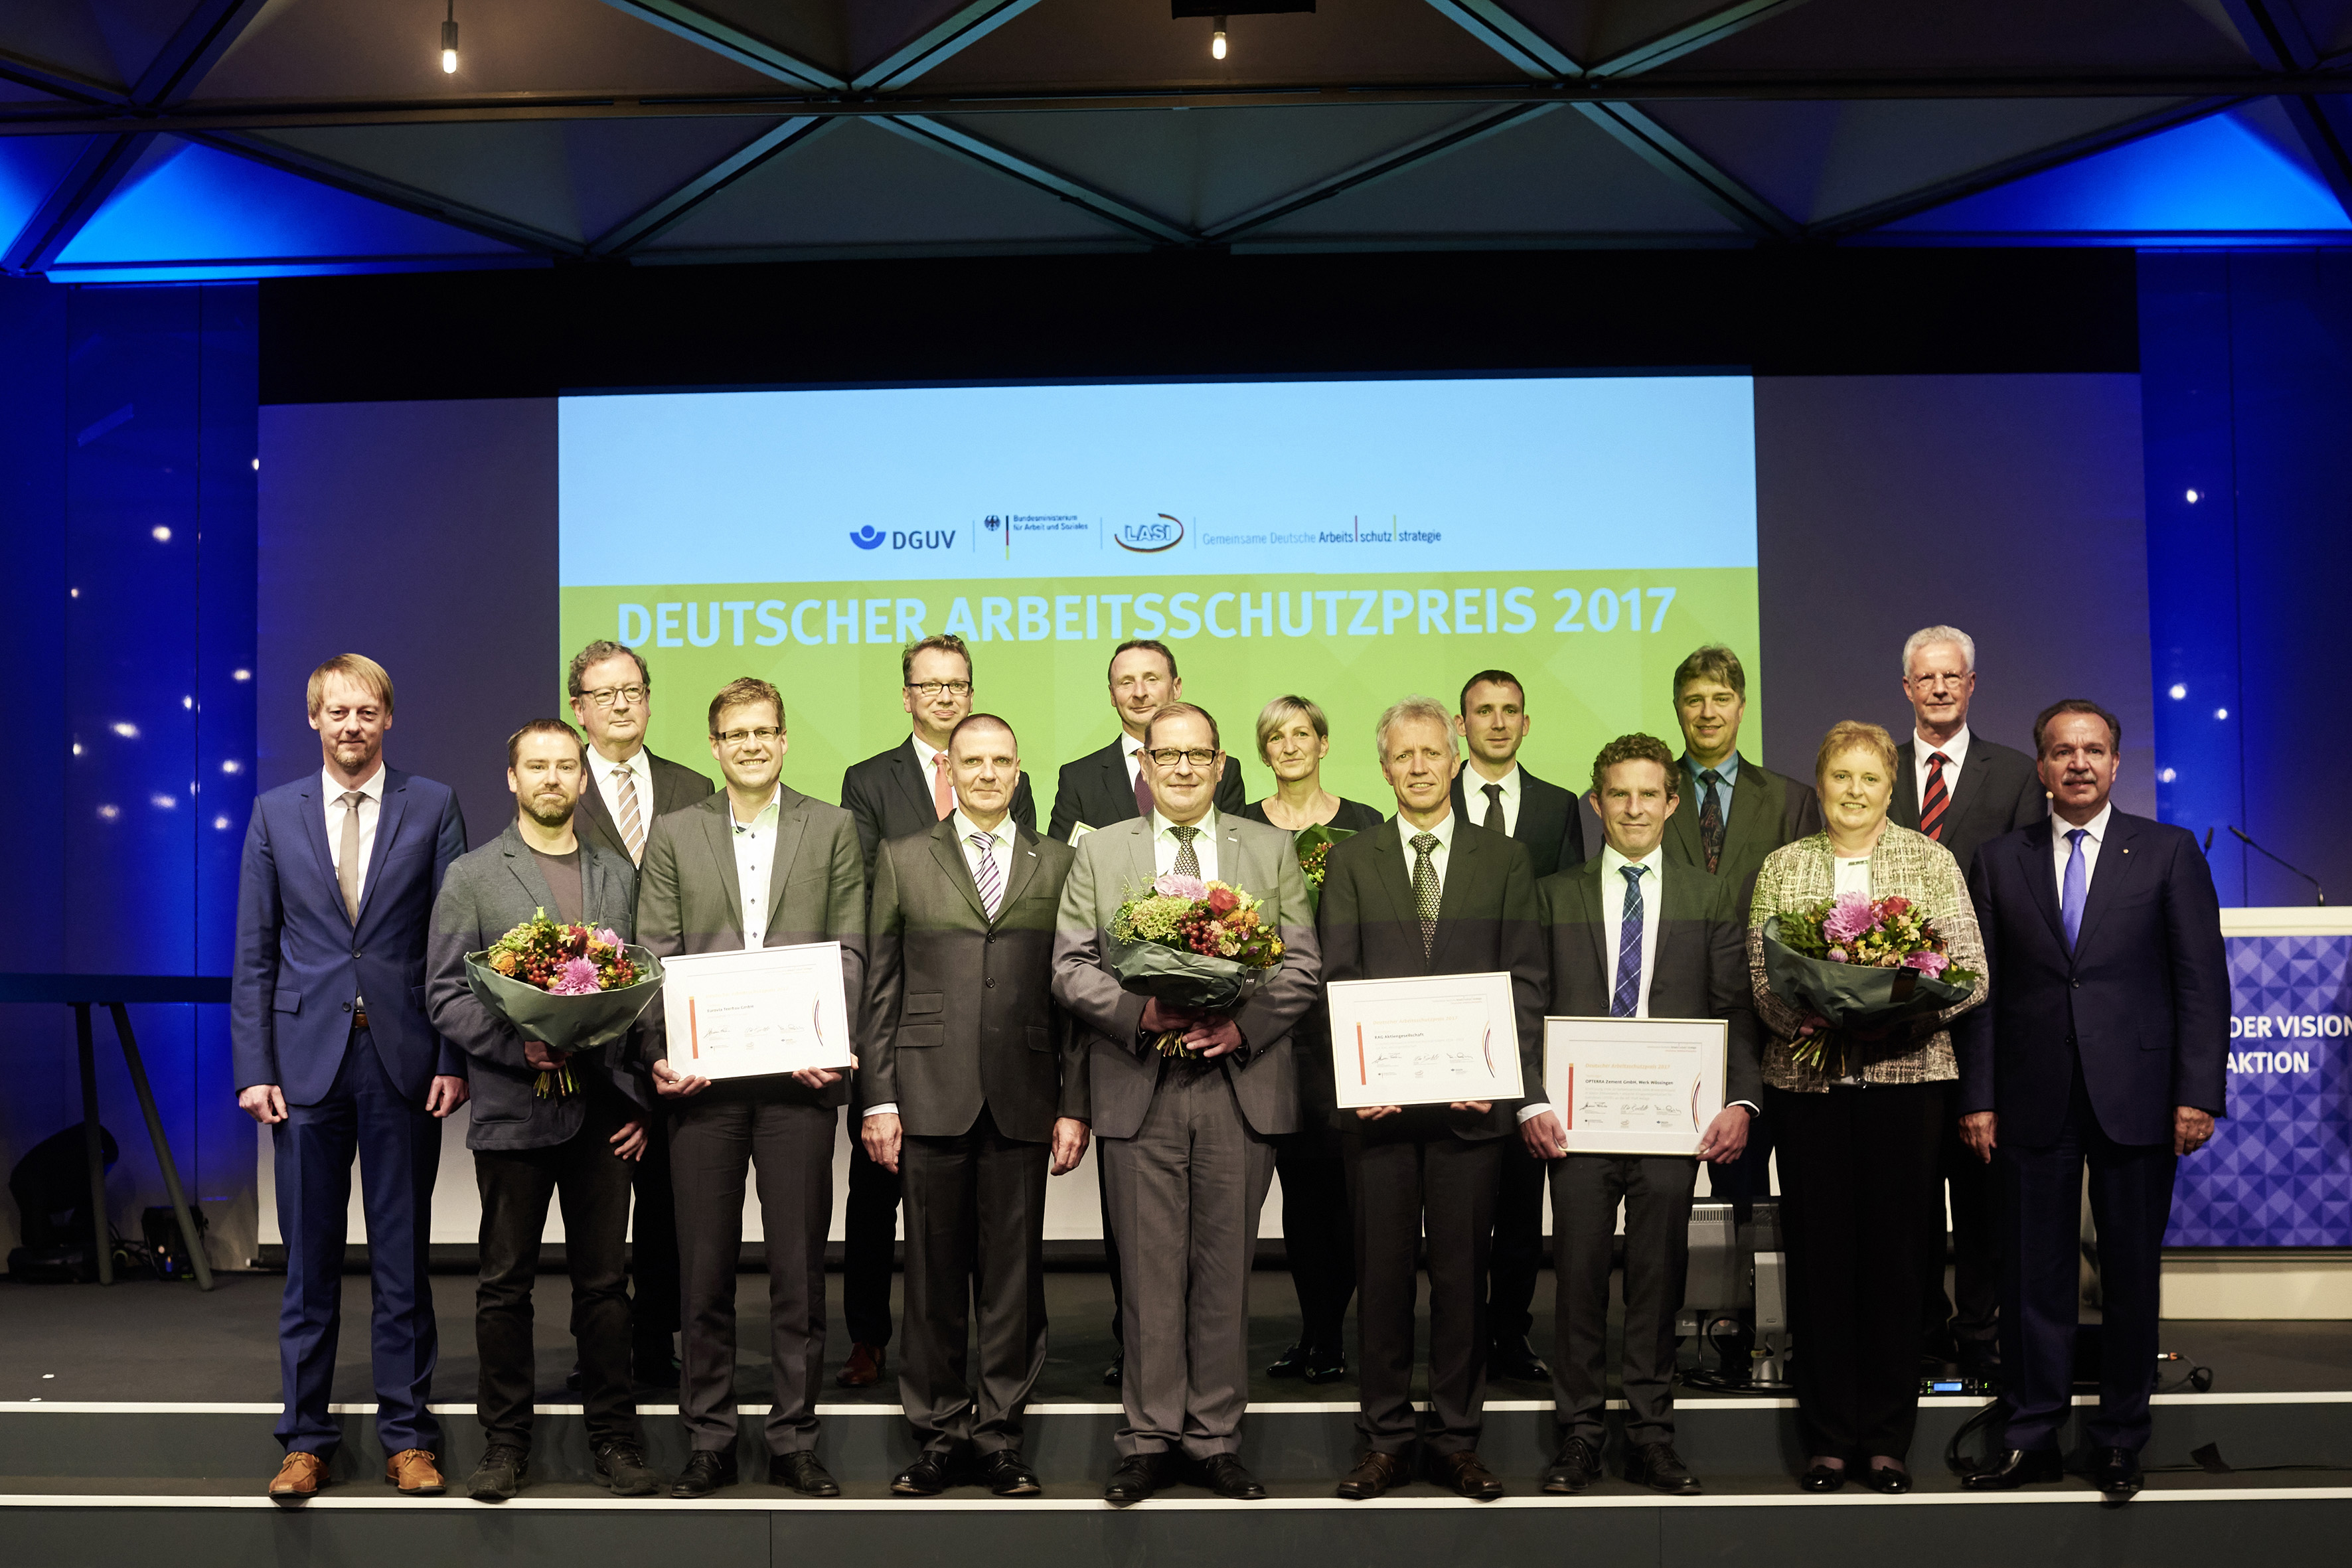 Gruppenfoto der Preisträger*innen des Deutschen Arbeitsschutzpreises 2017